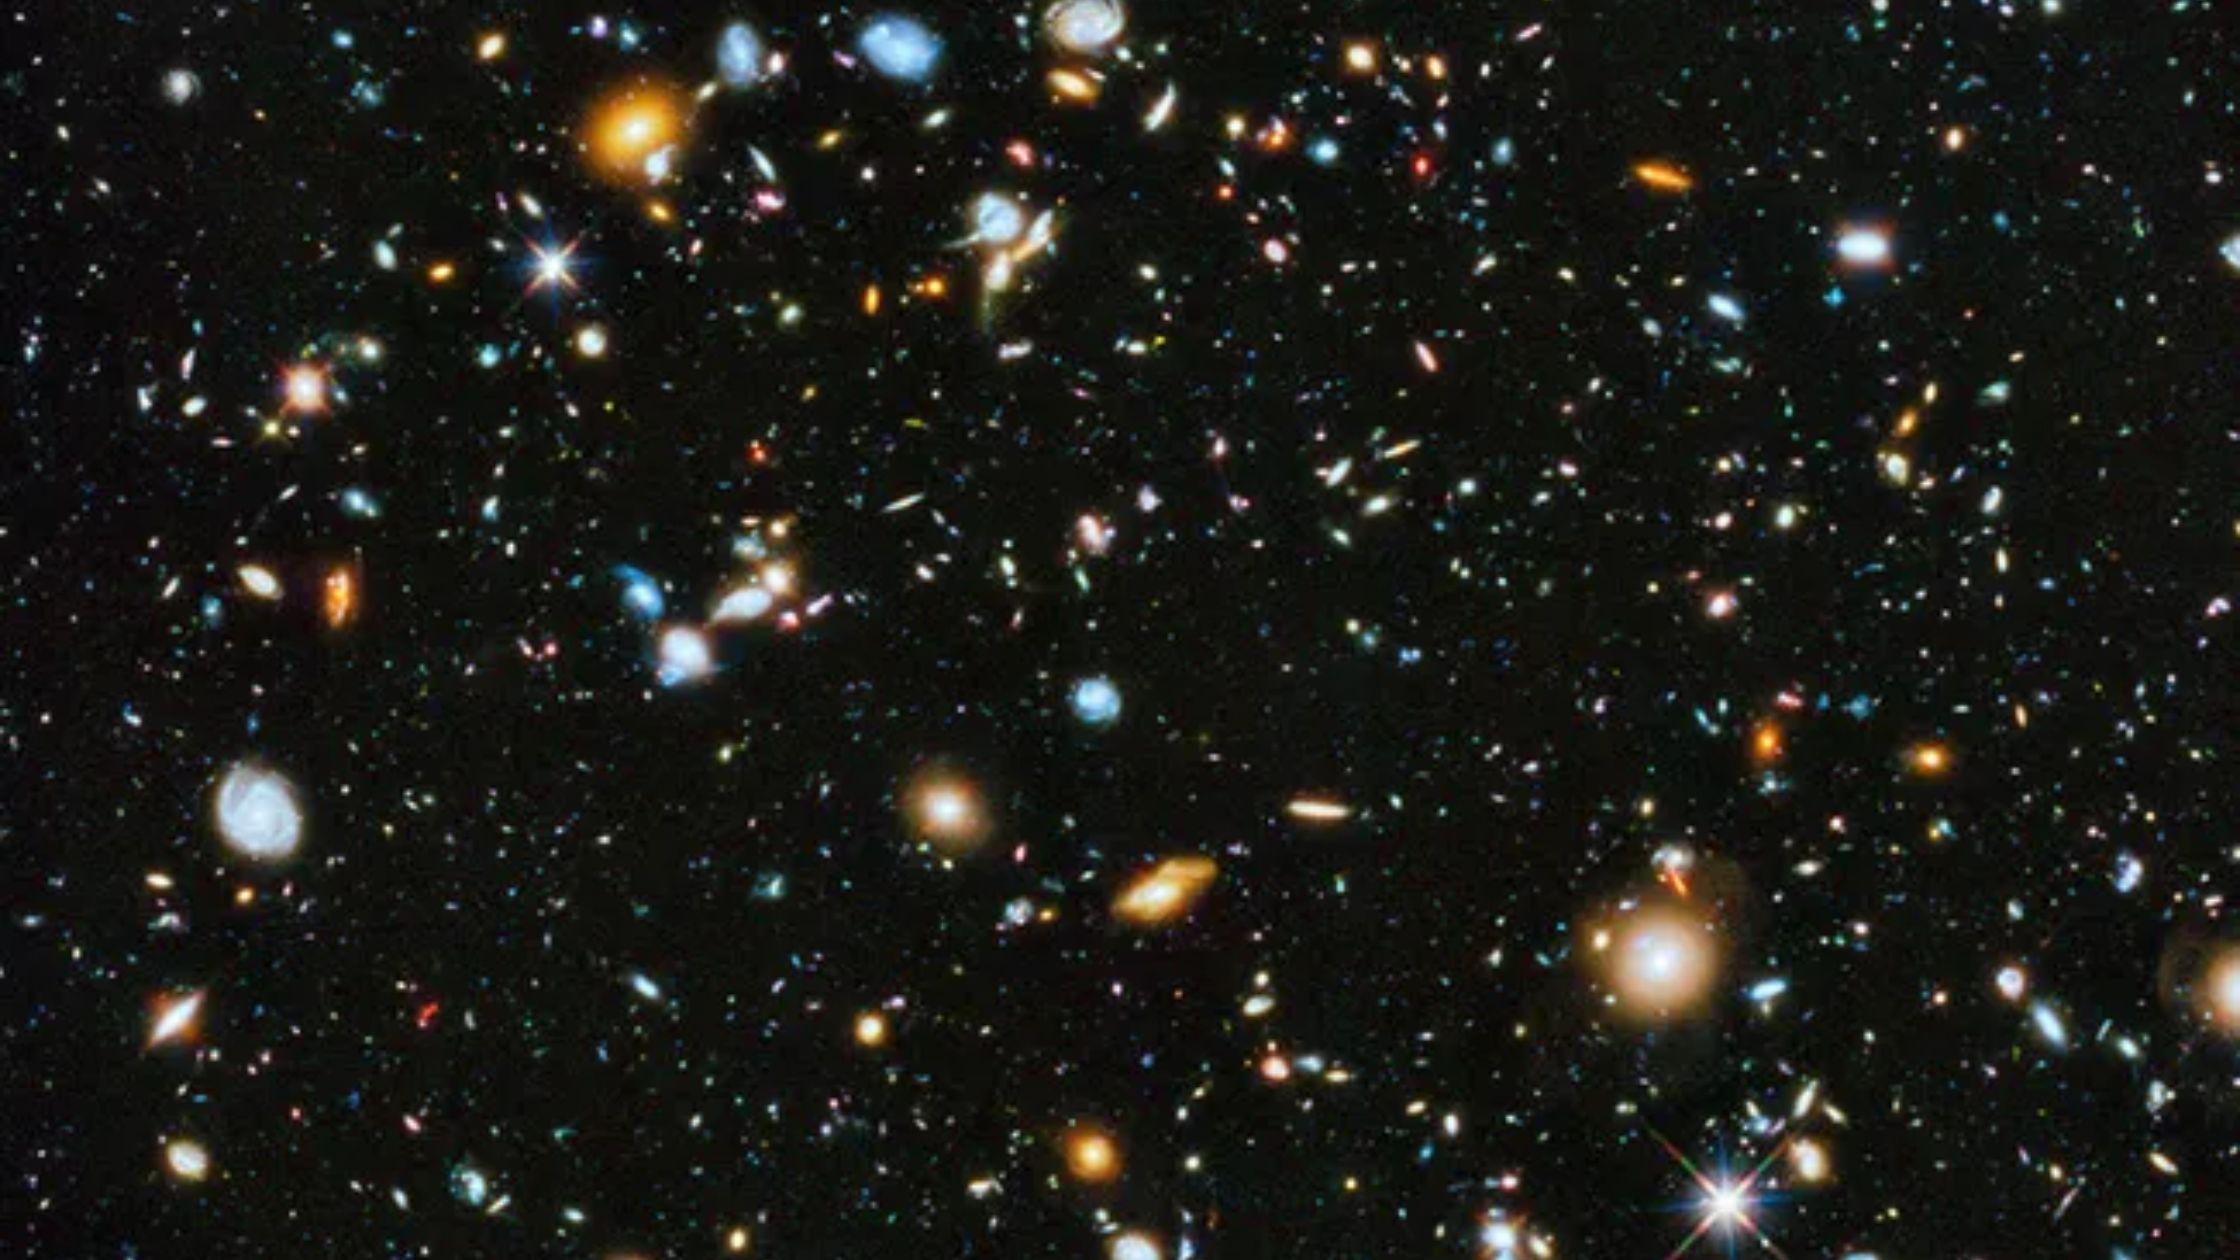 بعد مسح 25 مليون مجرة!! ربما تكون كثافة الكون أقل مما كان متوقعًا